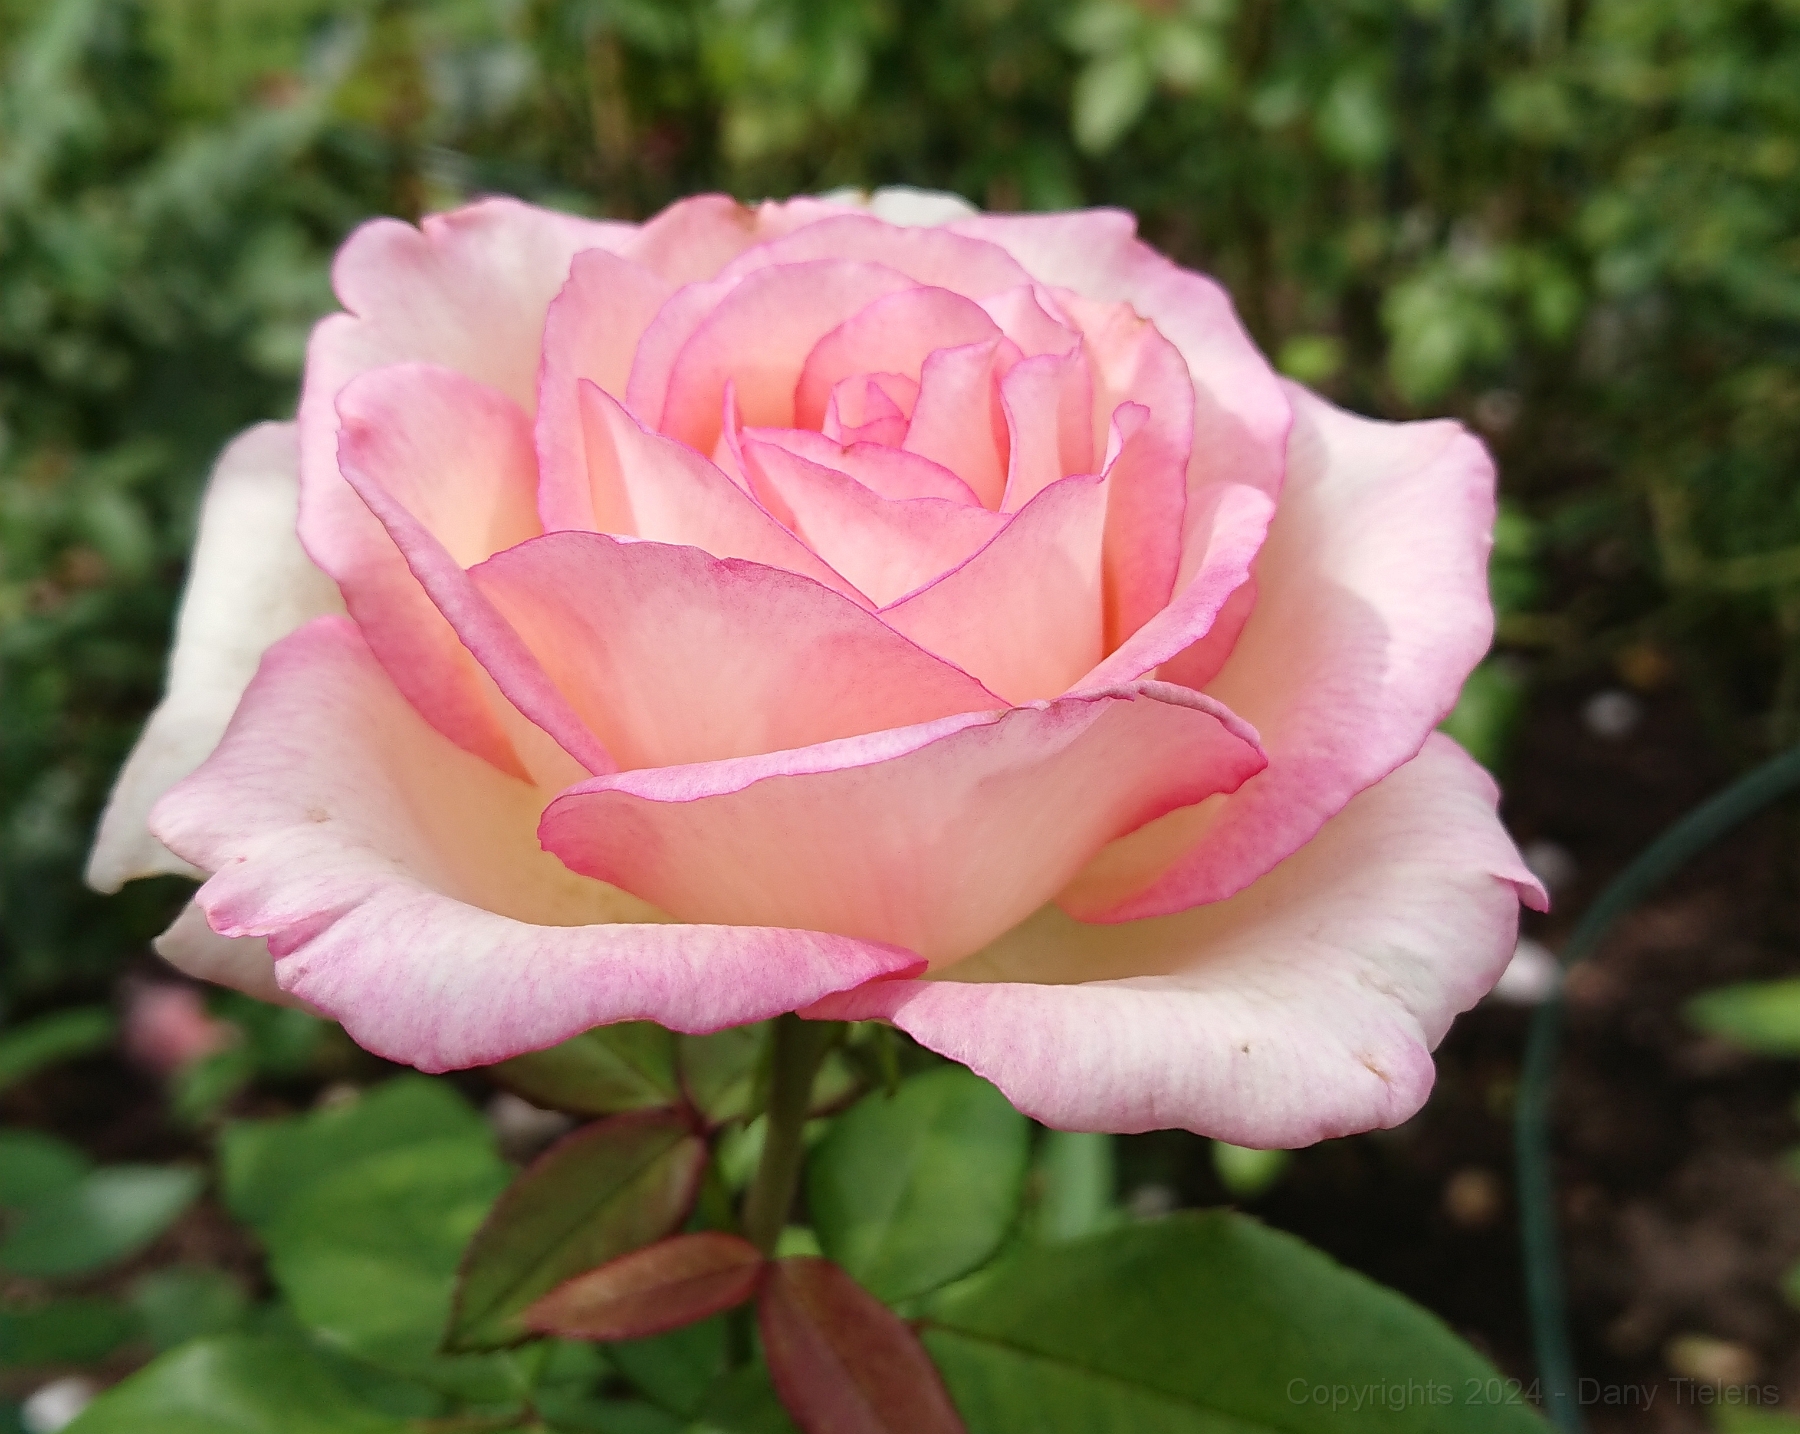 Rosa 'Souvenir de Baden-Baden' 2019 - 002.JPG